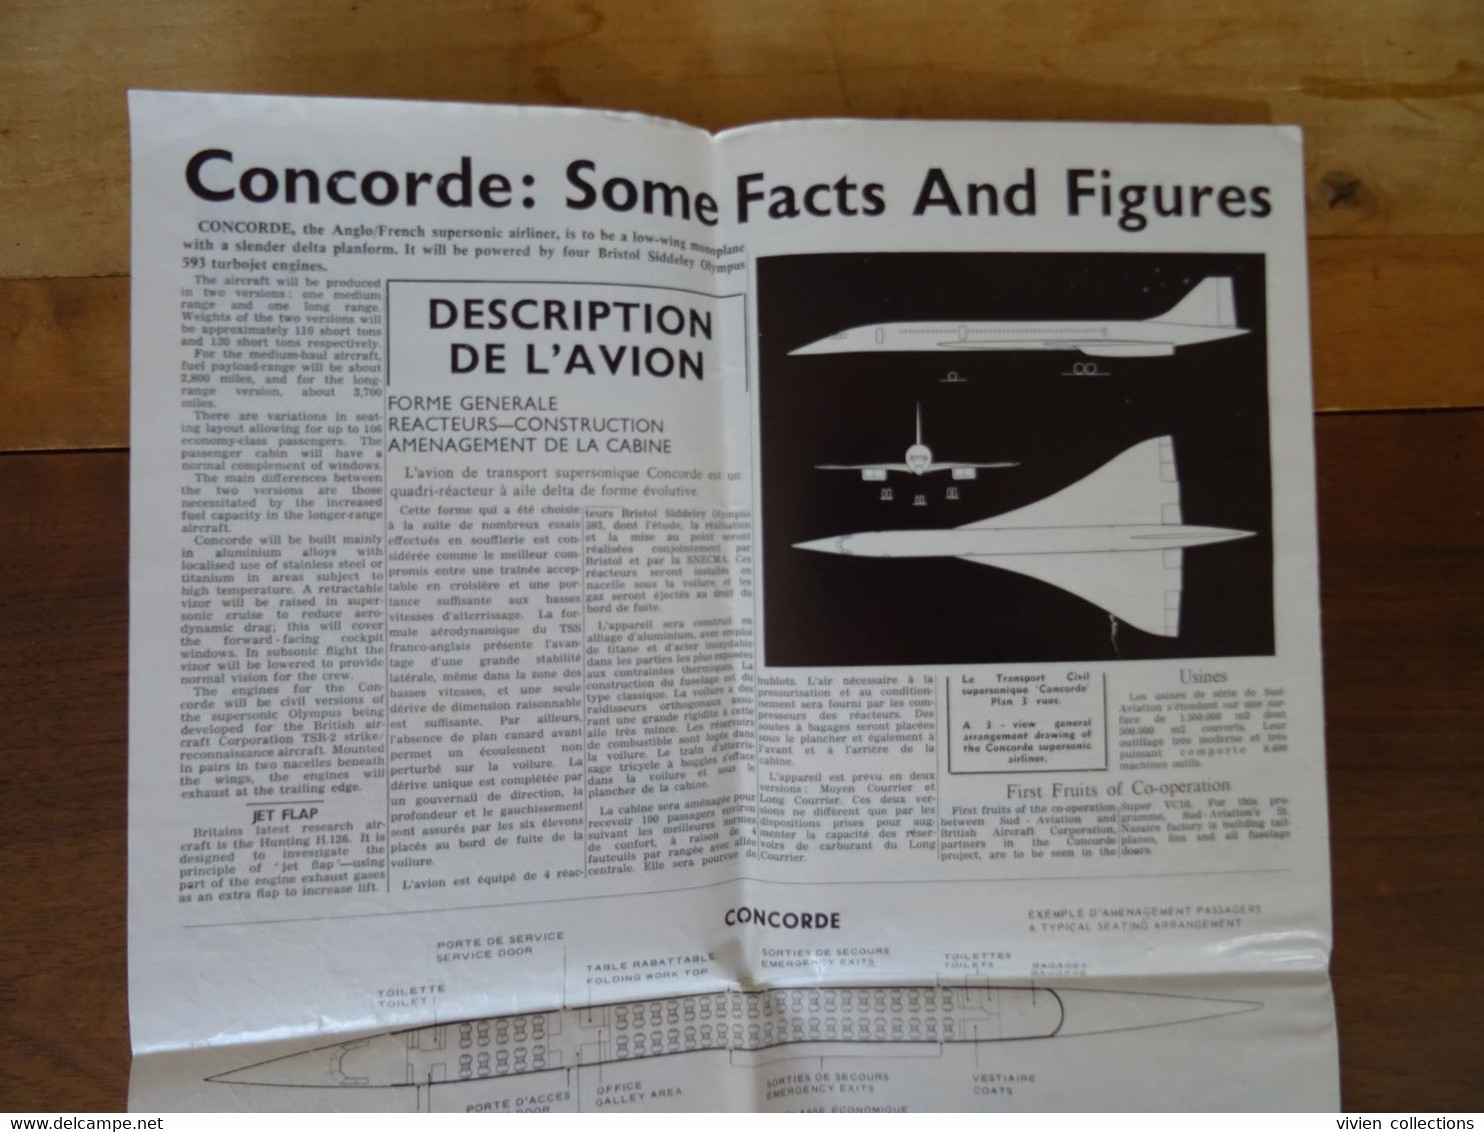 Le concorde caractéristiques et performances Sud Aviation France le transport civil supersonique